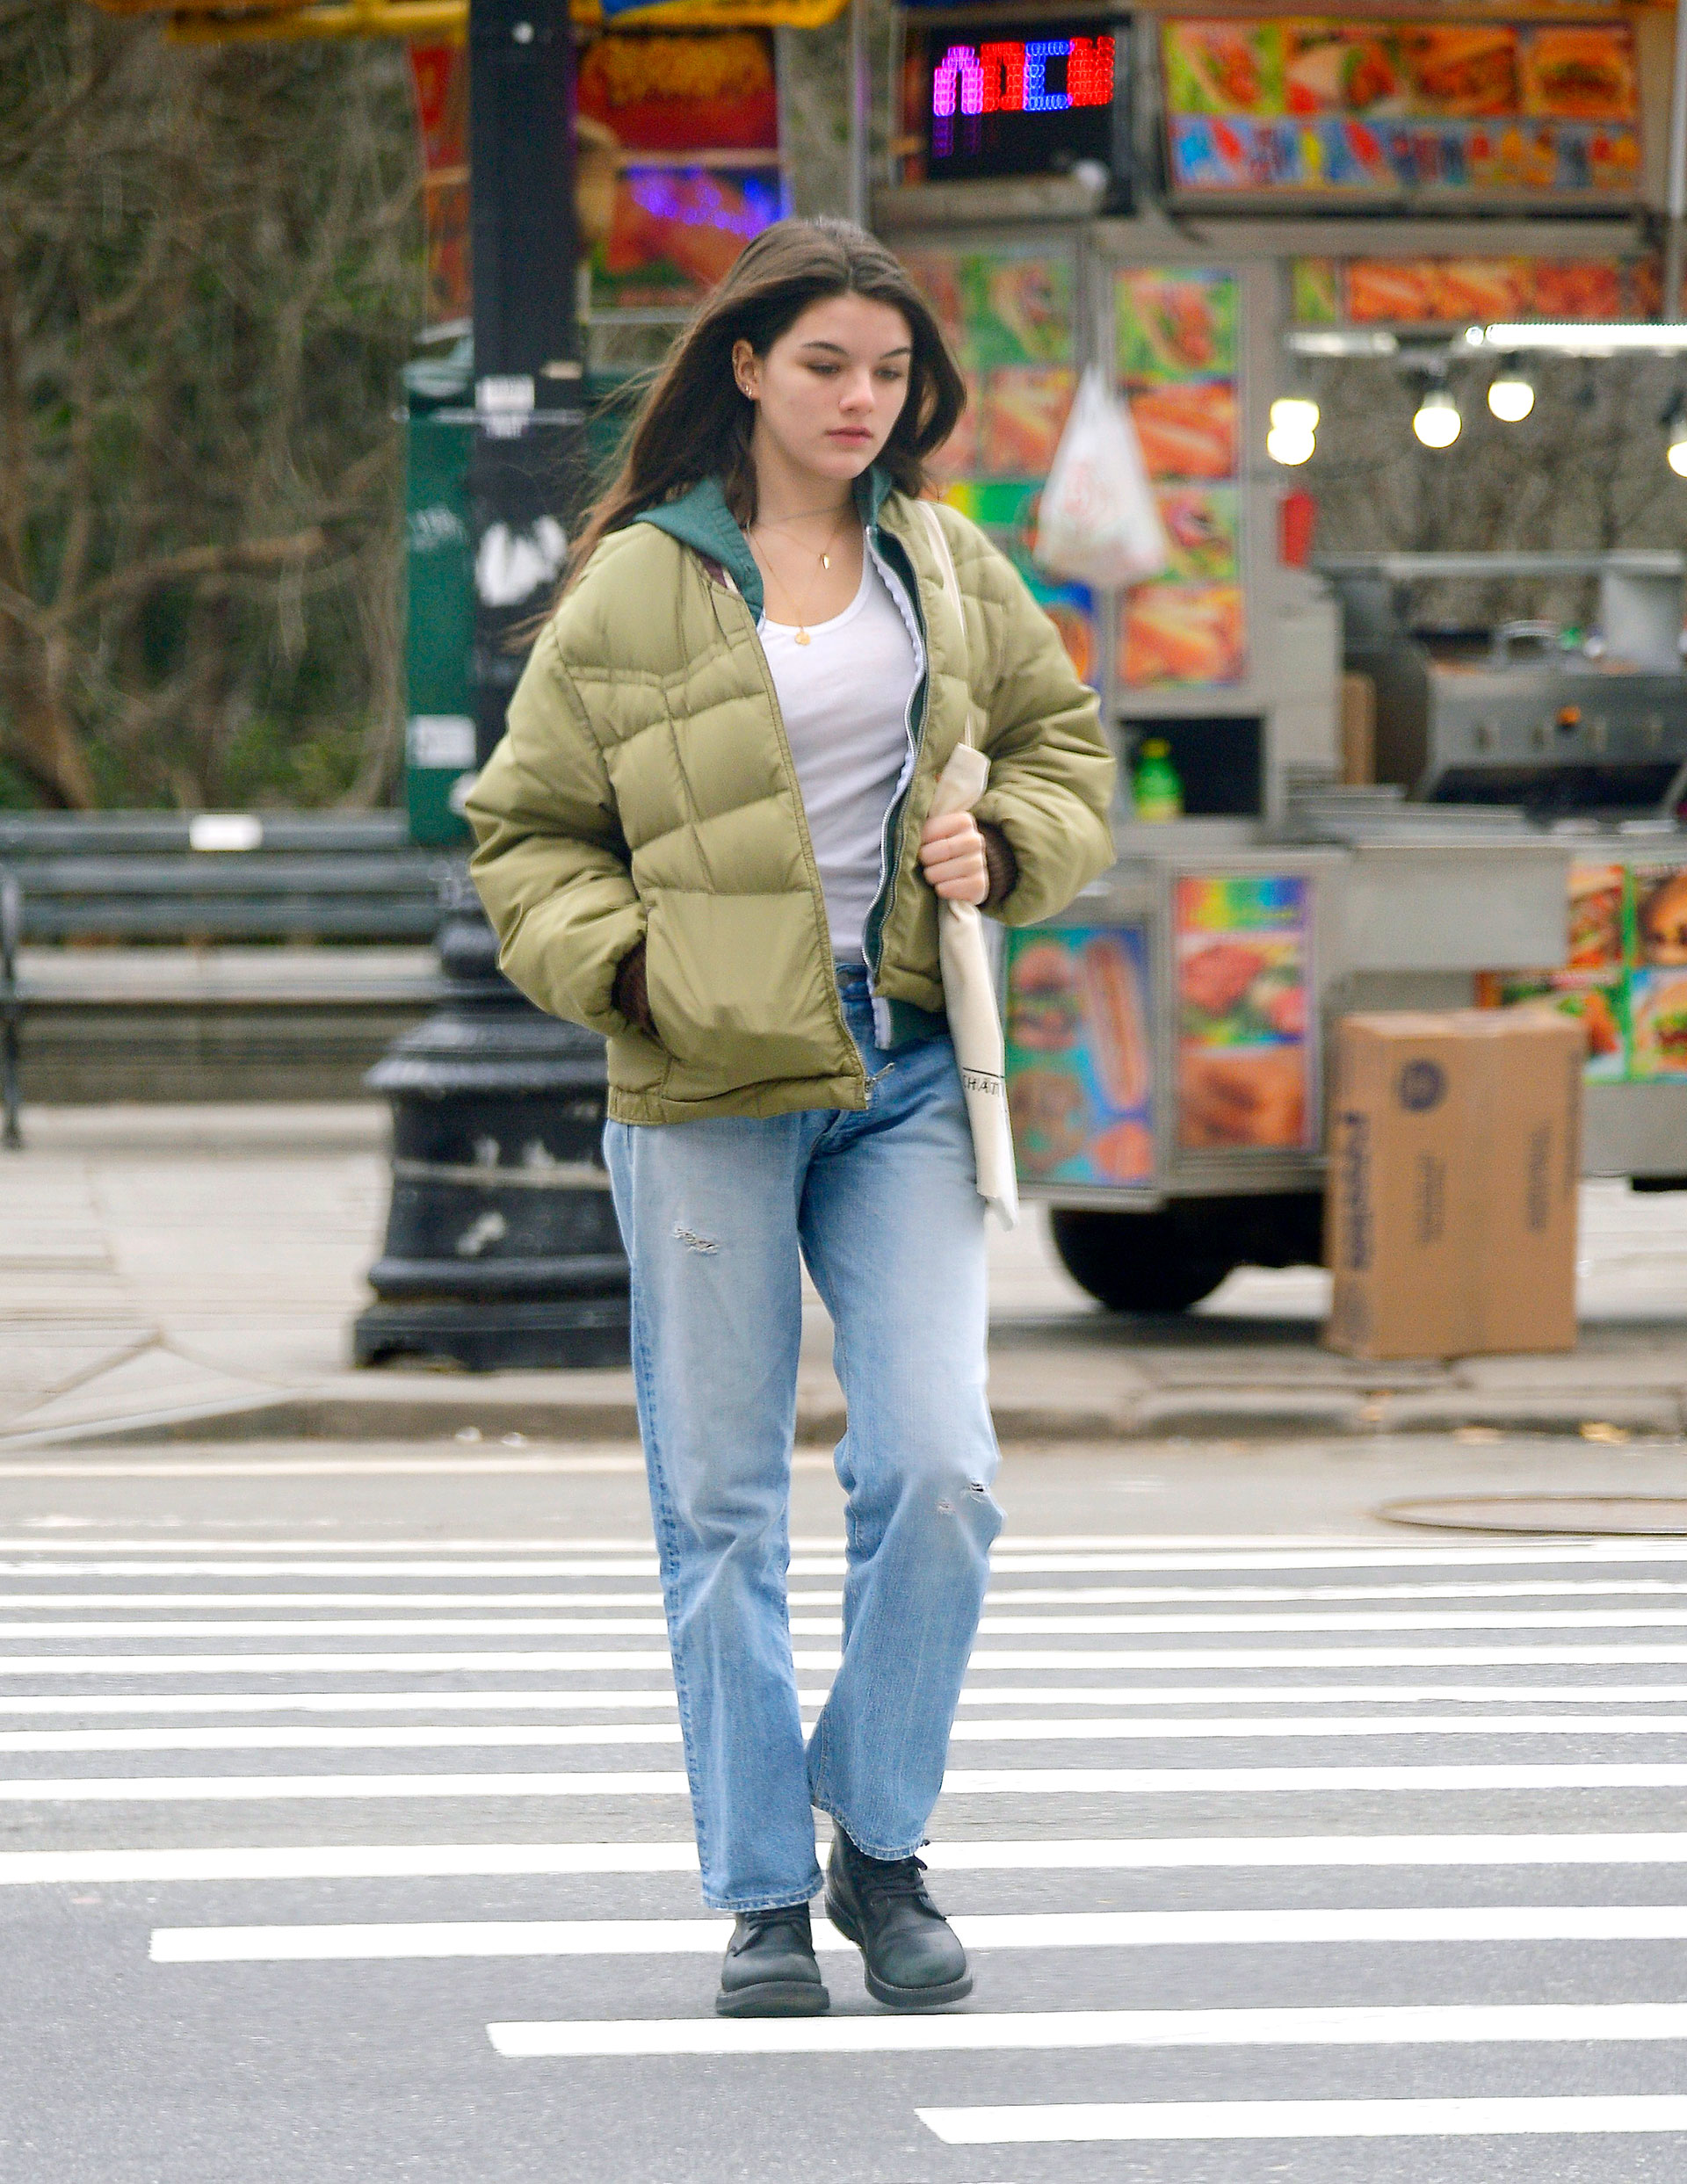 Suri Cruise fue fotografiada mientras daba un paseo por las calles de Nueva York. La adolescente vistió un look casual: jean clarito, remera blanca, campera verde